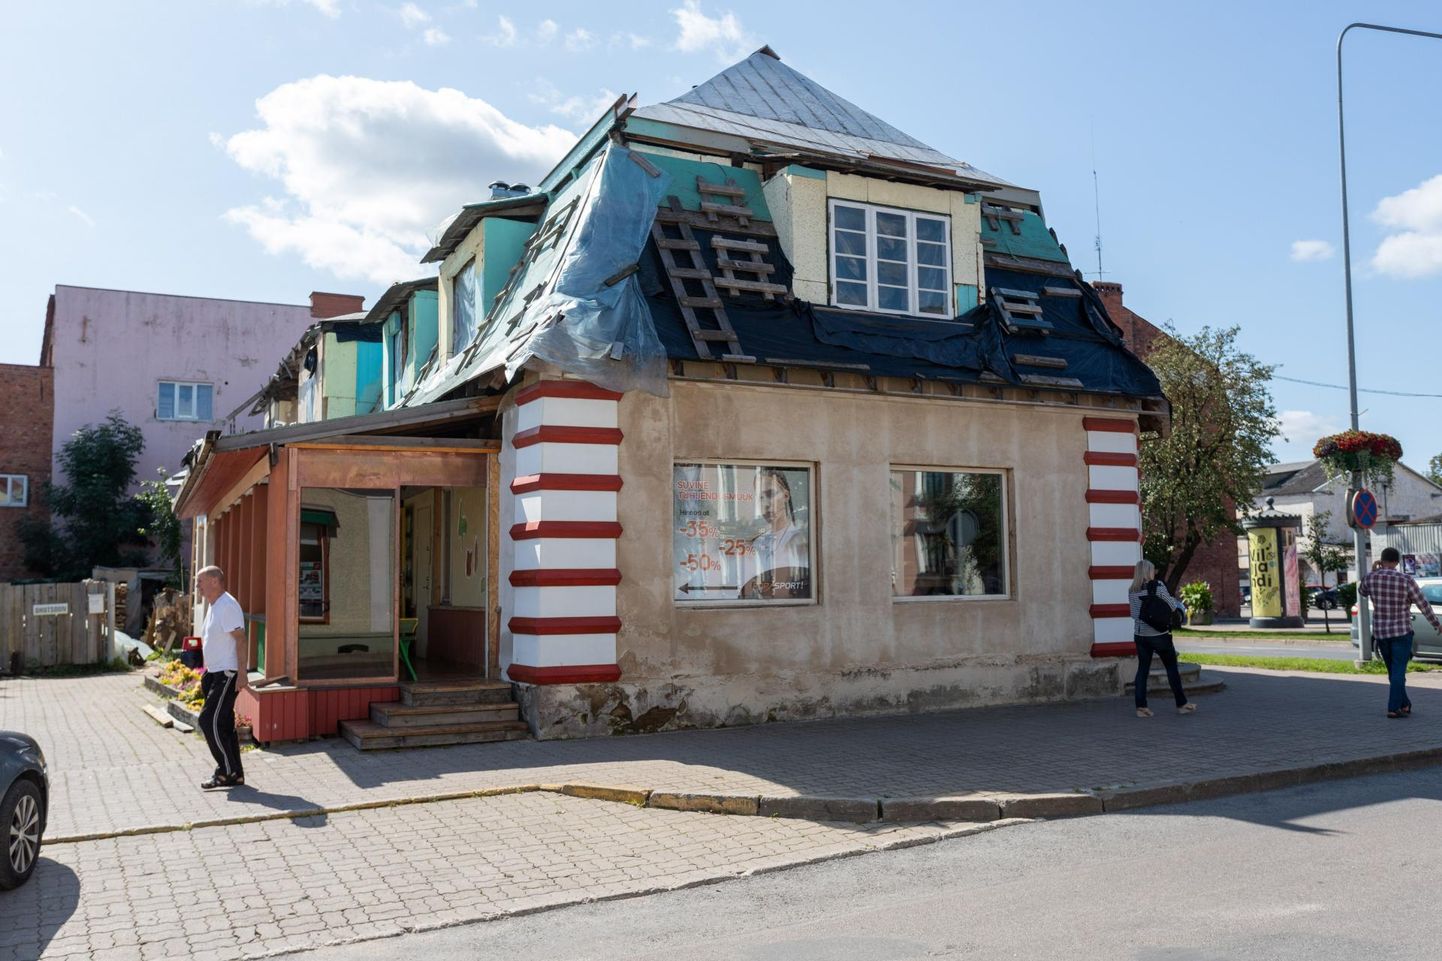 Kui Viljandis kuulutataks välja avaliku häbipleki konkurss, võiks 2014. aastast südalinna ühes käidavamas kohas remondijärgus olnud hoone pretendeerida võidule.